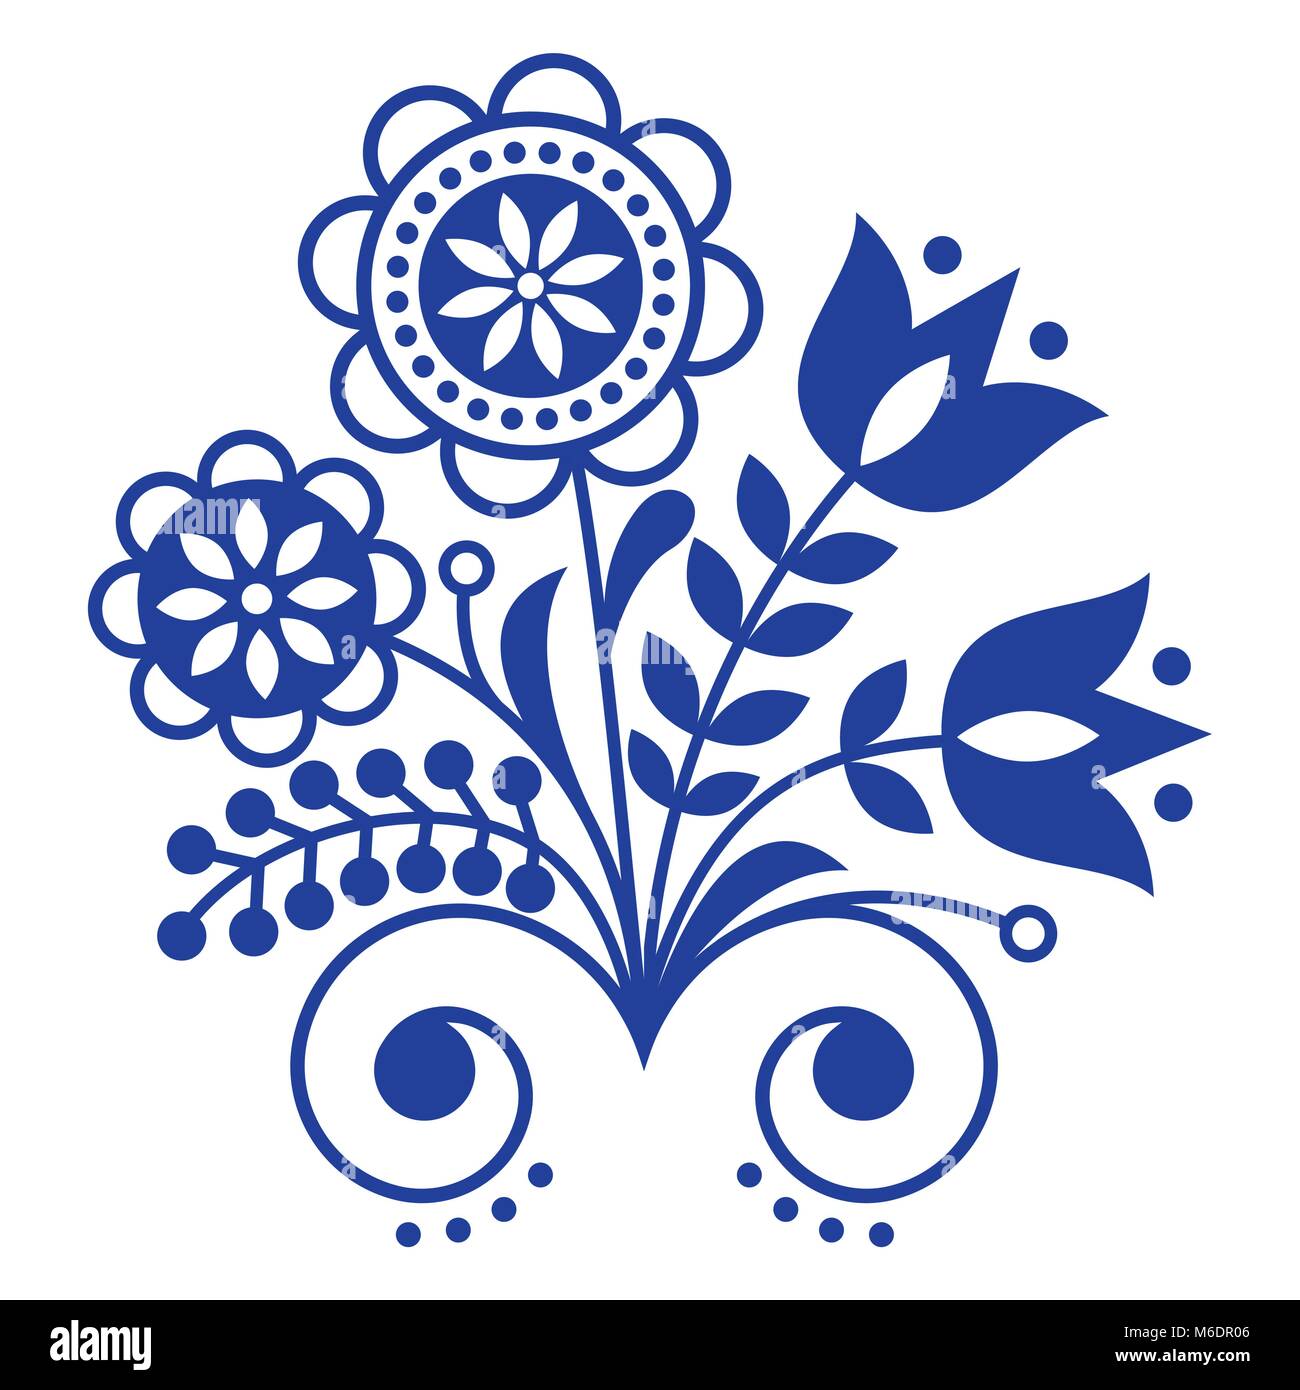 Skandinavische Volkskunst Ornament mit Blumen, Nordic florale Dessin, retro Hintergrund in Marineblau Stock Vektor